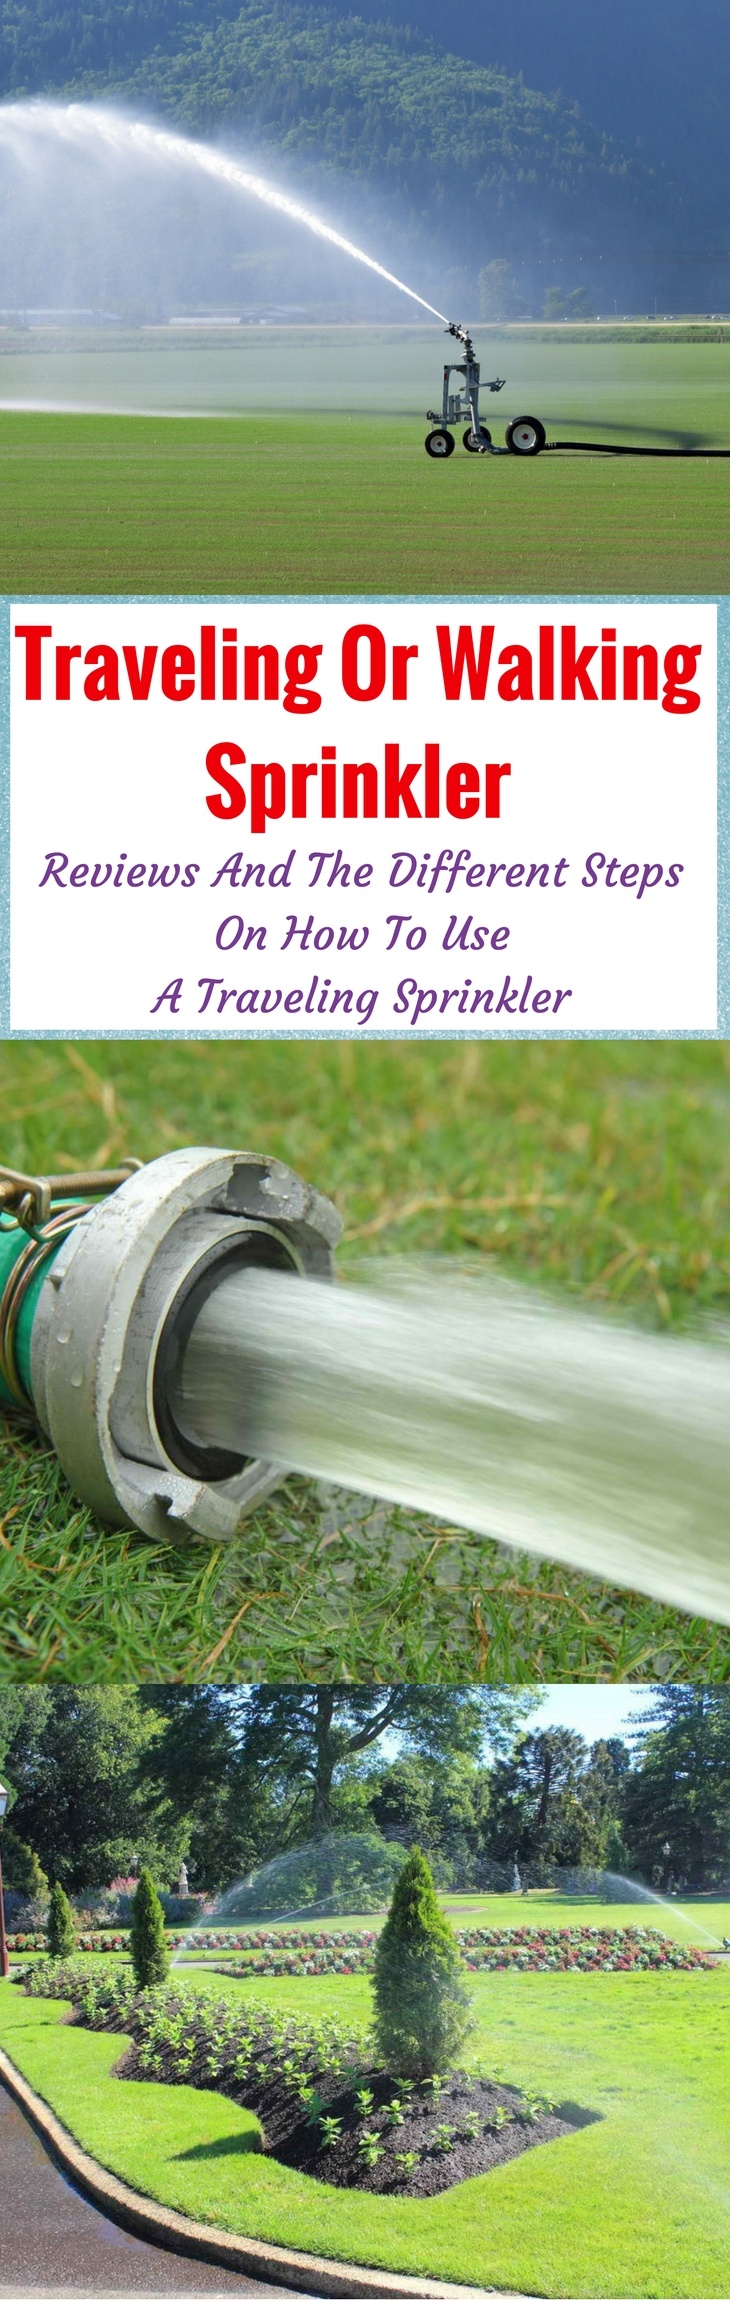 best traveling or walking sprinklers pin it